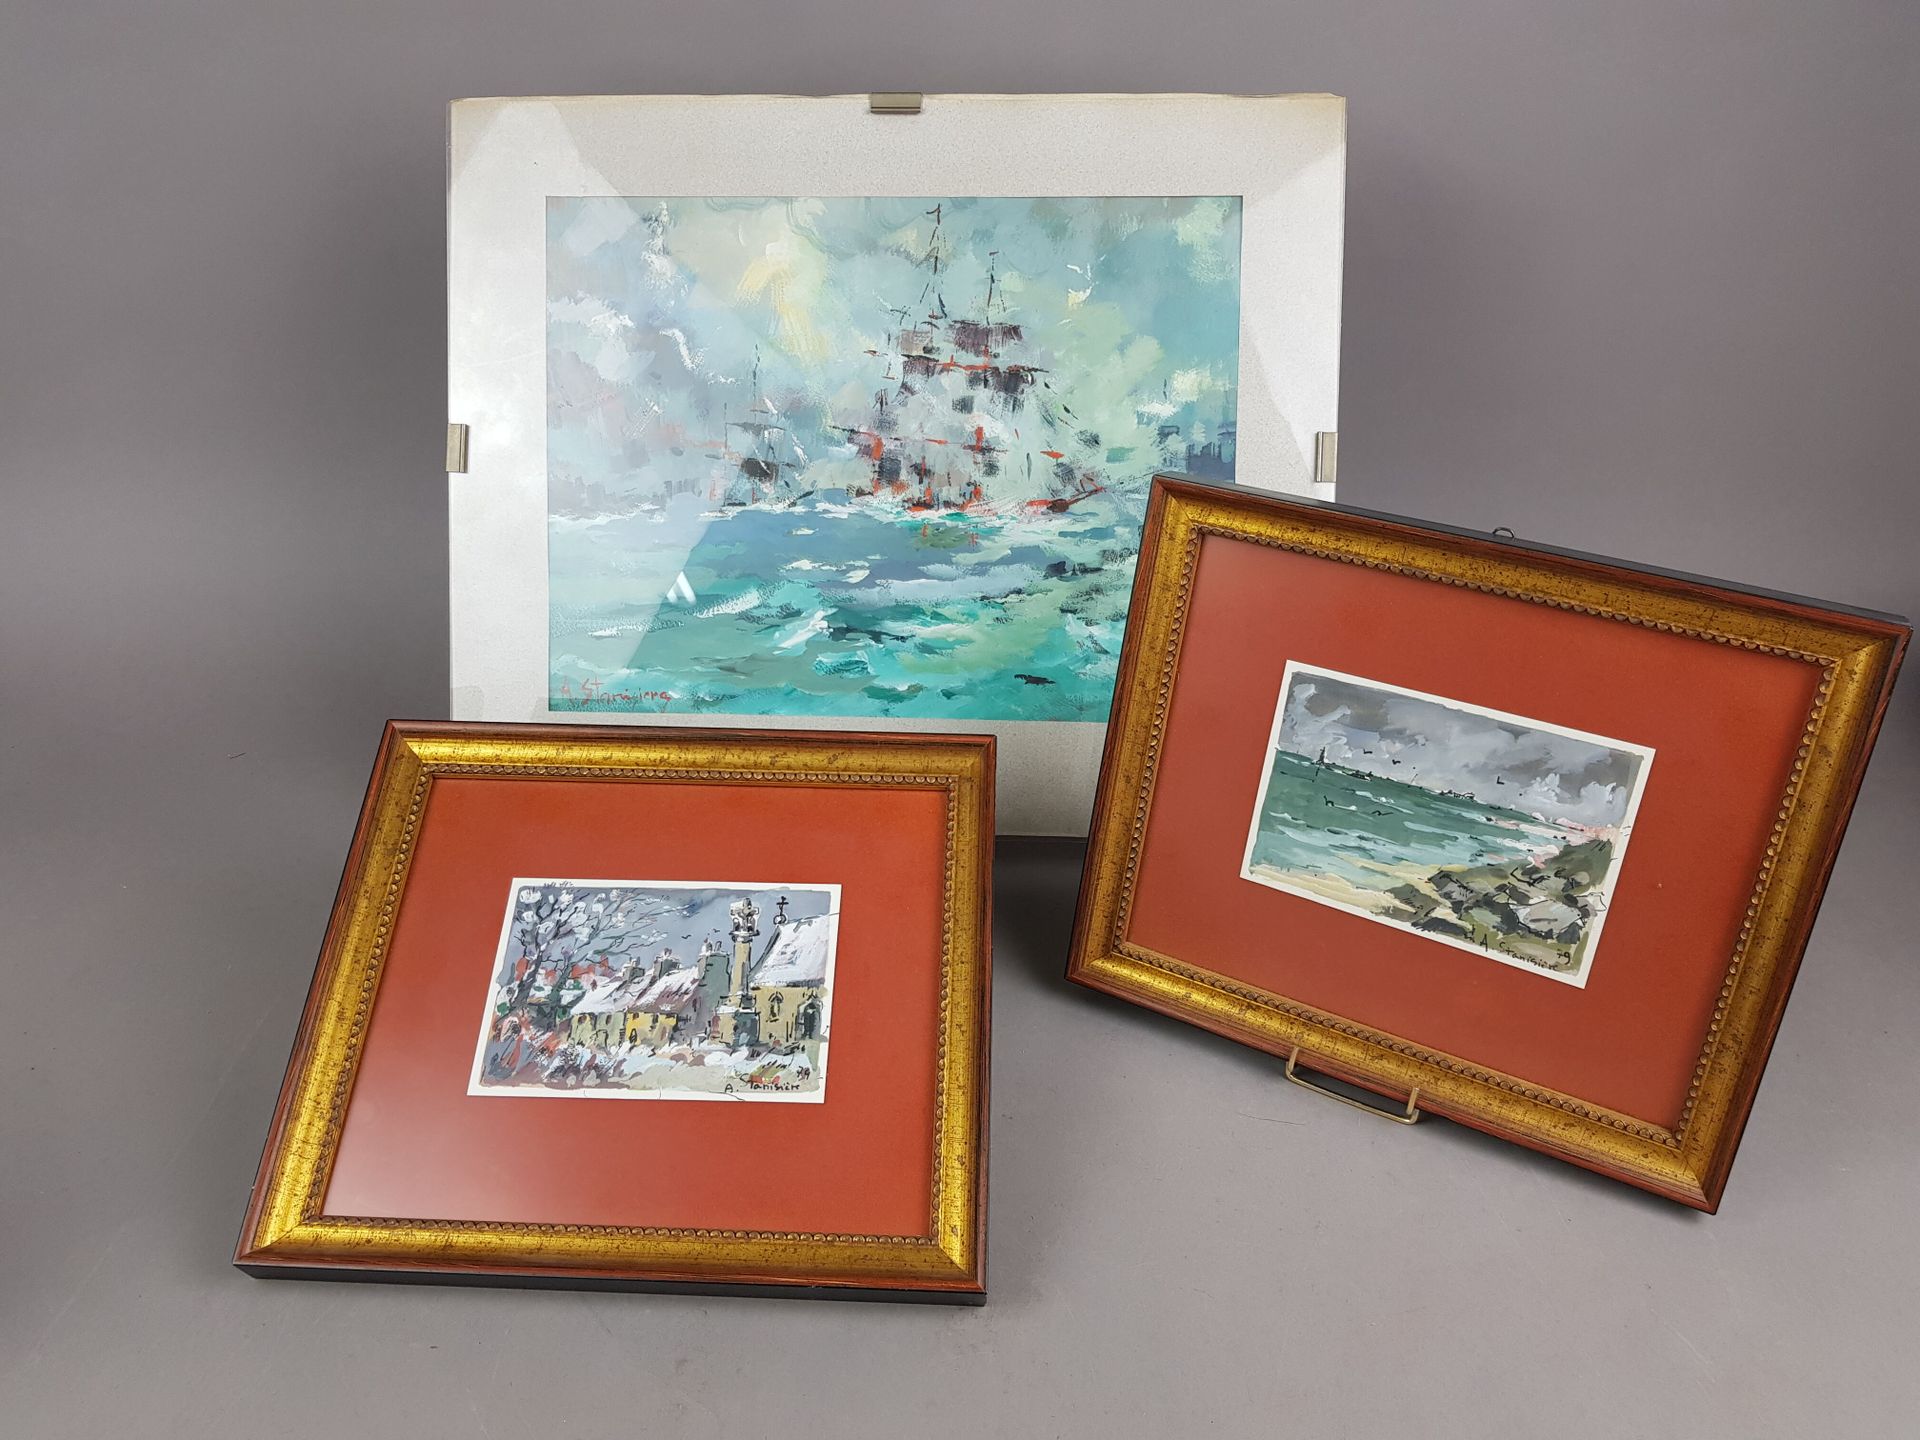 Null 安托万-斯坦尼西耶 (1934)
"村景"、"港口 "和 "海上之舟"。
1979
三幅纸上丙烯作品，玻璃下有框架
右下方有签名和日期，最后一张在左下&hellip;